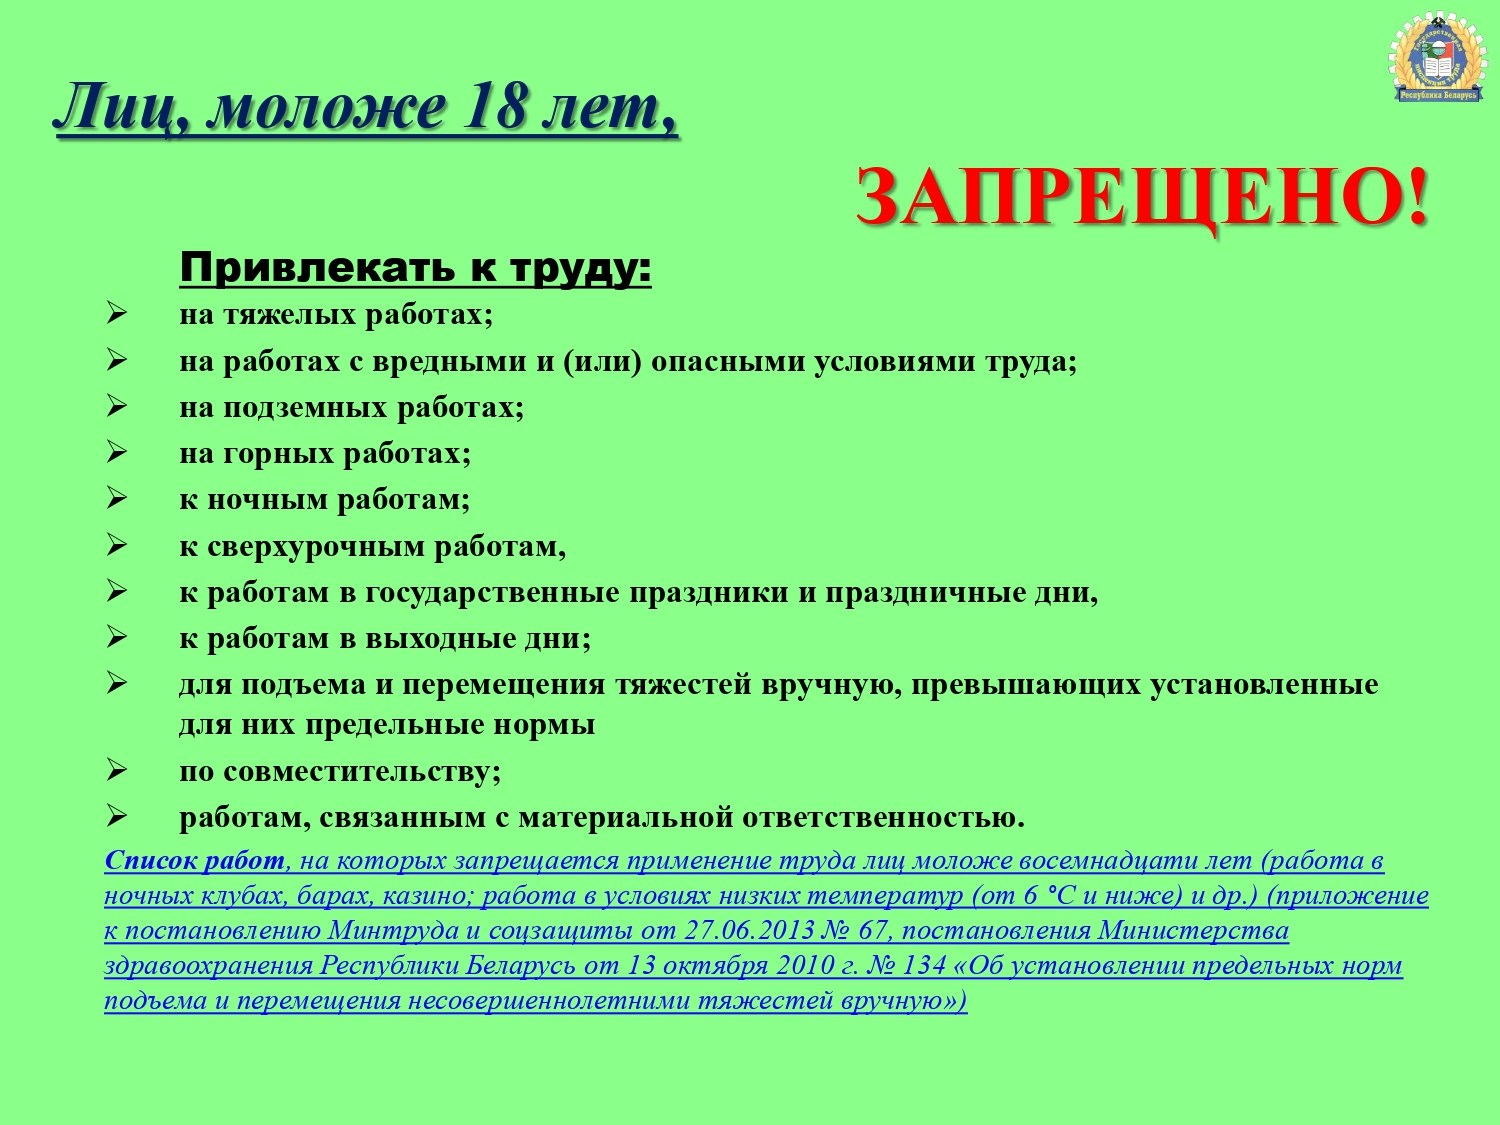 Trudoustrojstvo molodezhi - DGIT 2023-1_page-0012